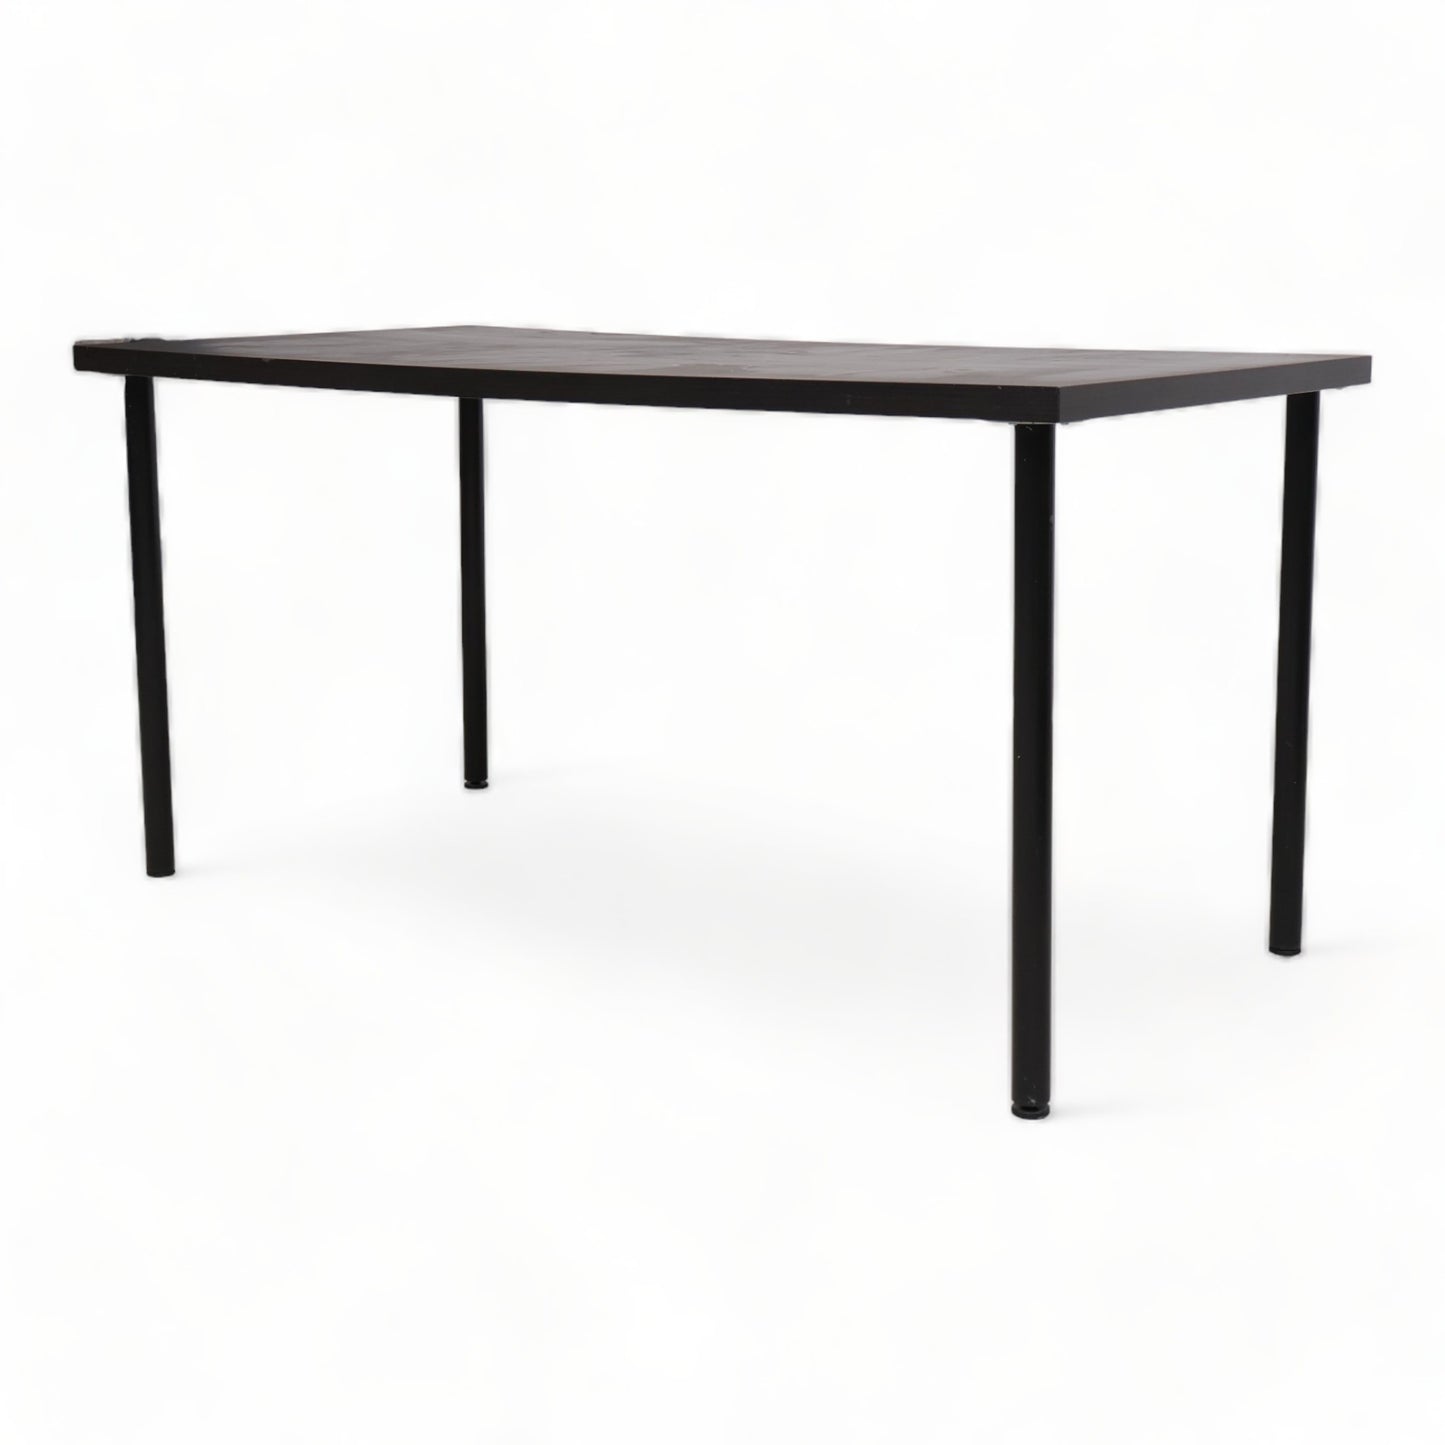 Kvalitetssikret | 150x75 cm, IKEA Linnmon skrivebord